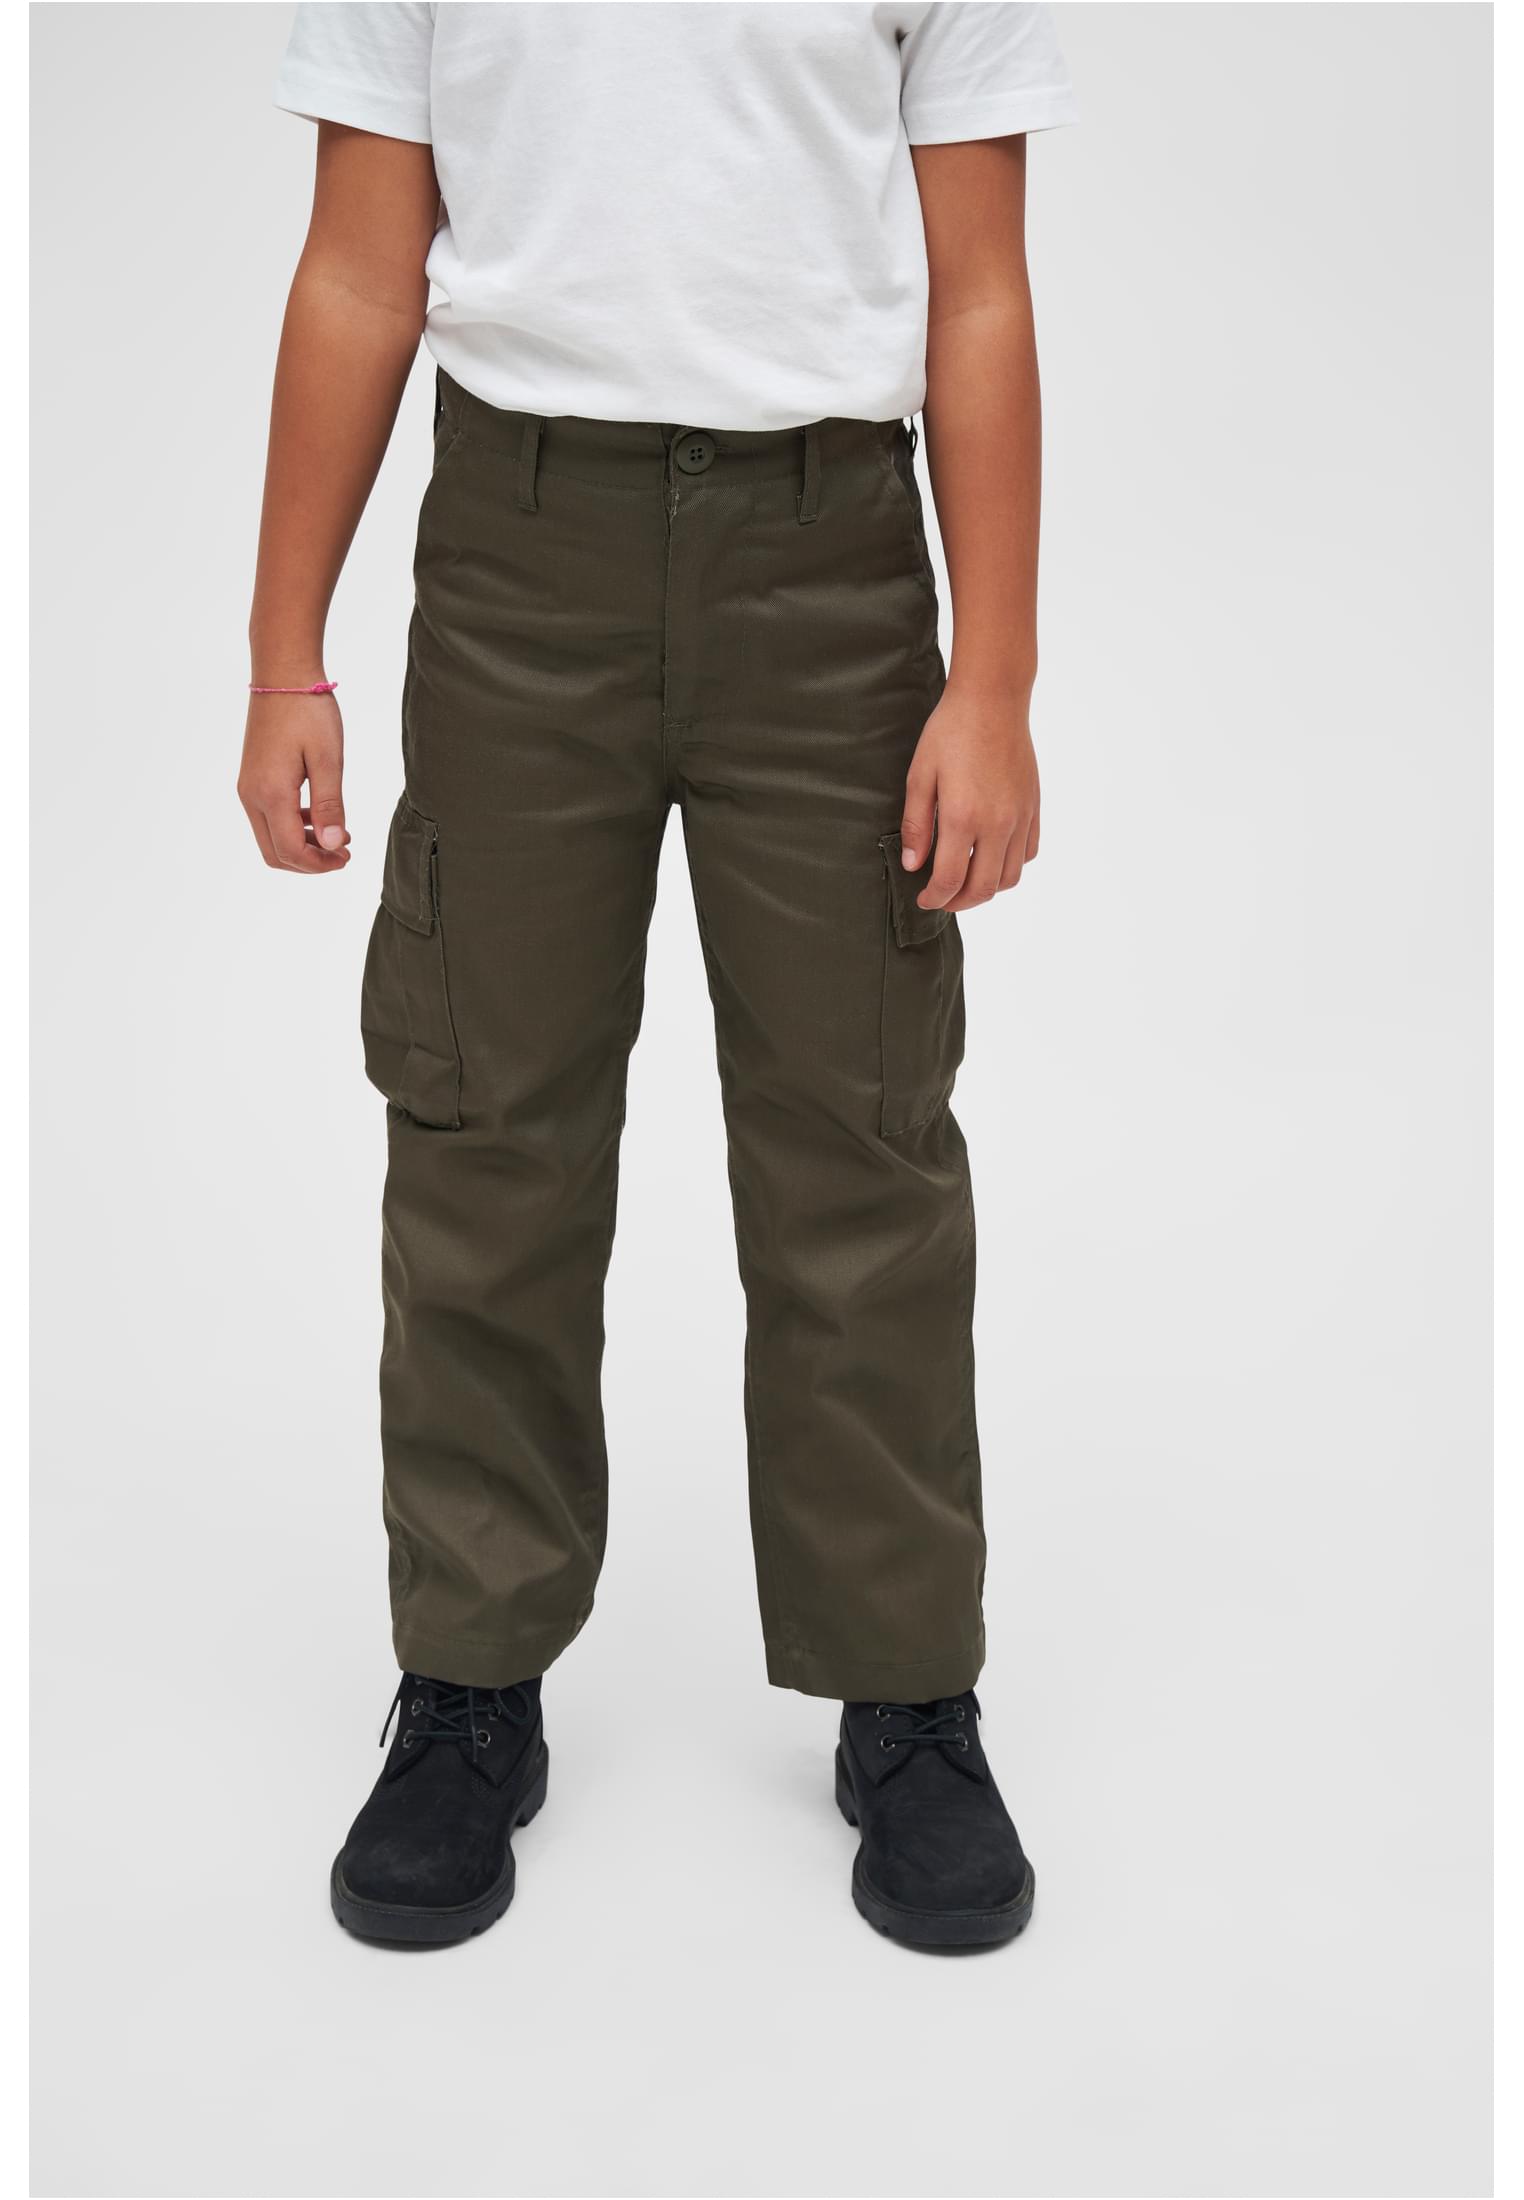 Children's Trousers US Ranger Olive